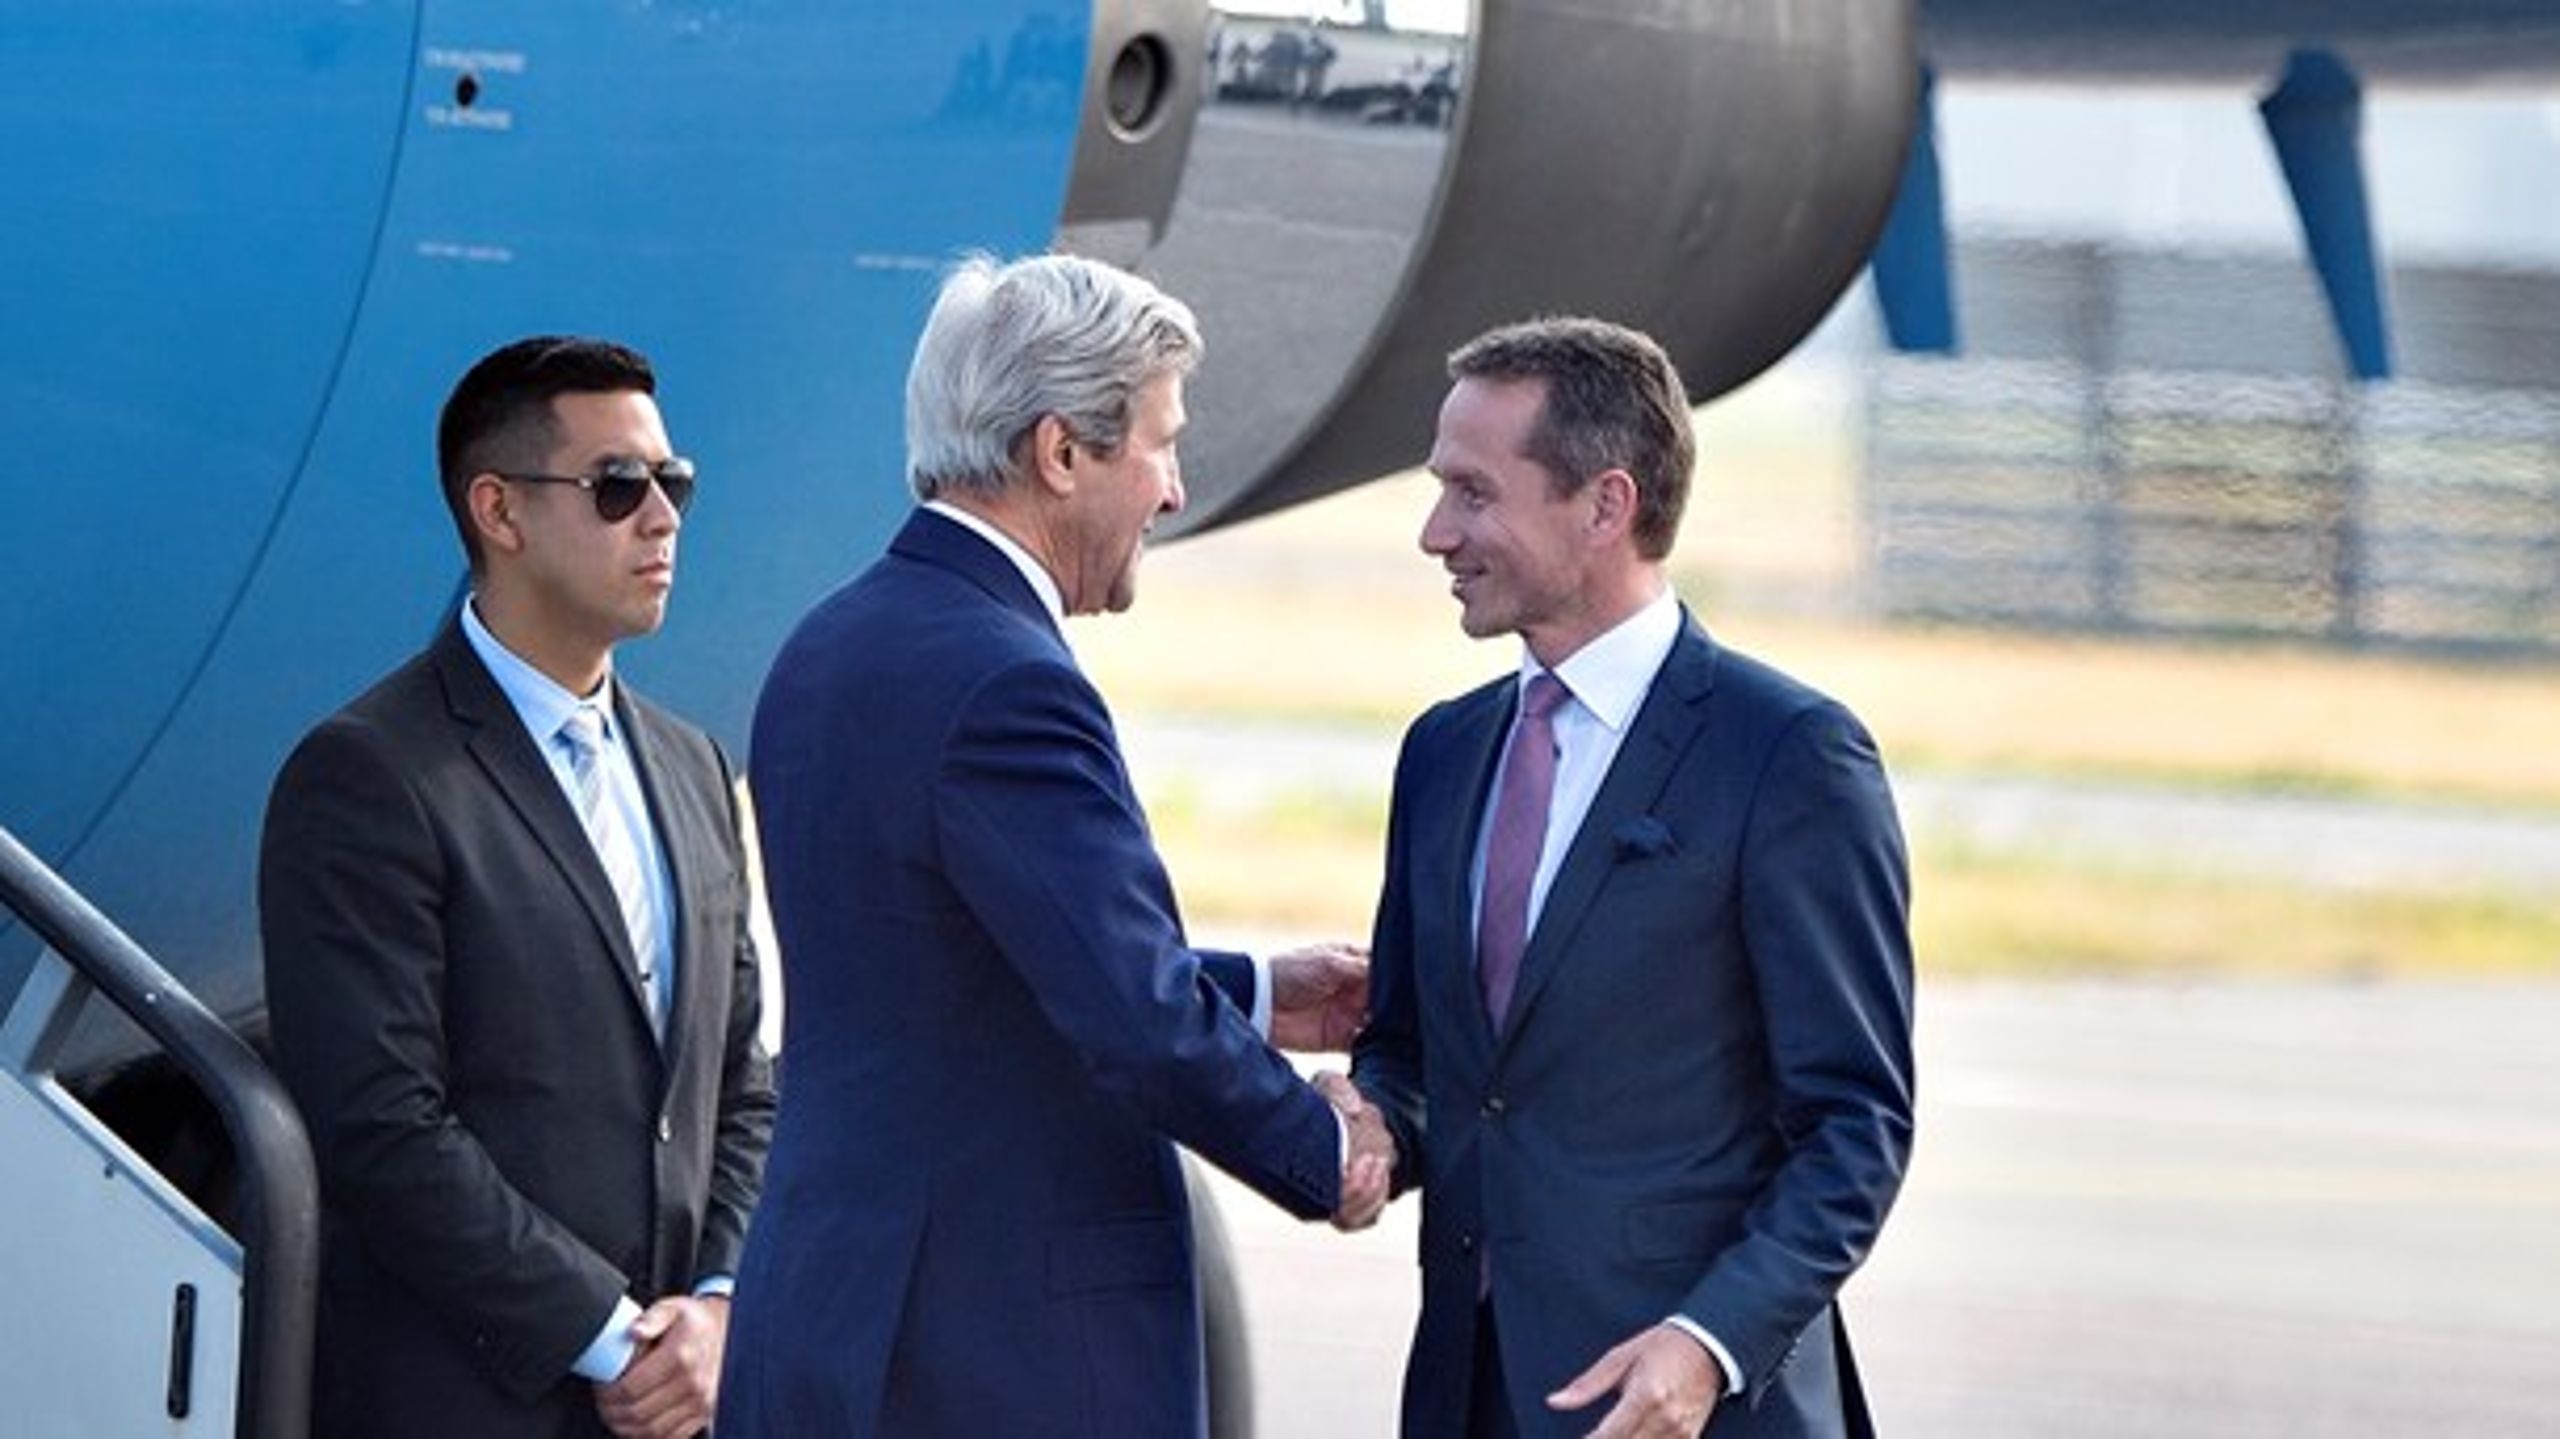 Kristian Jensen modtager den amerikanske udenrigsminister John Kerry i Københavns Lufthavn.